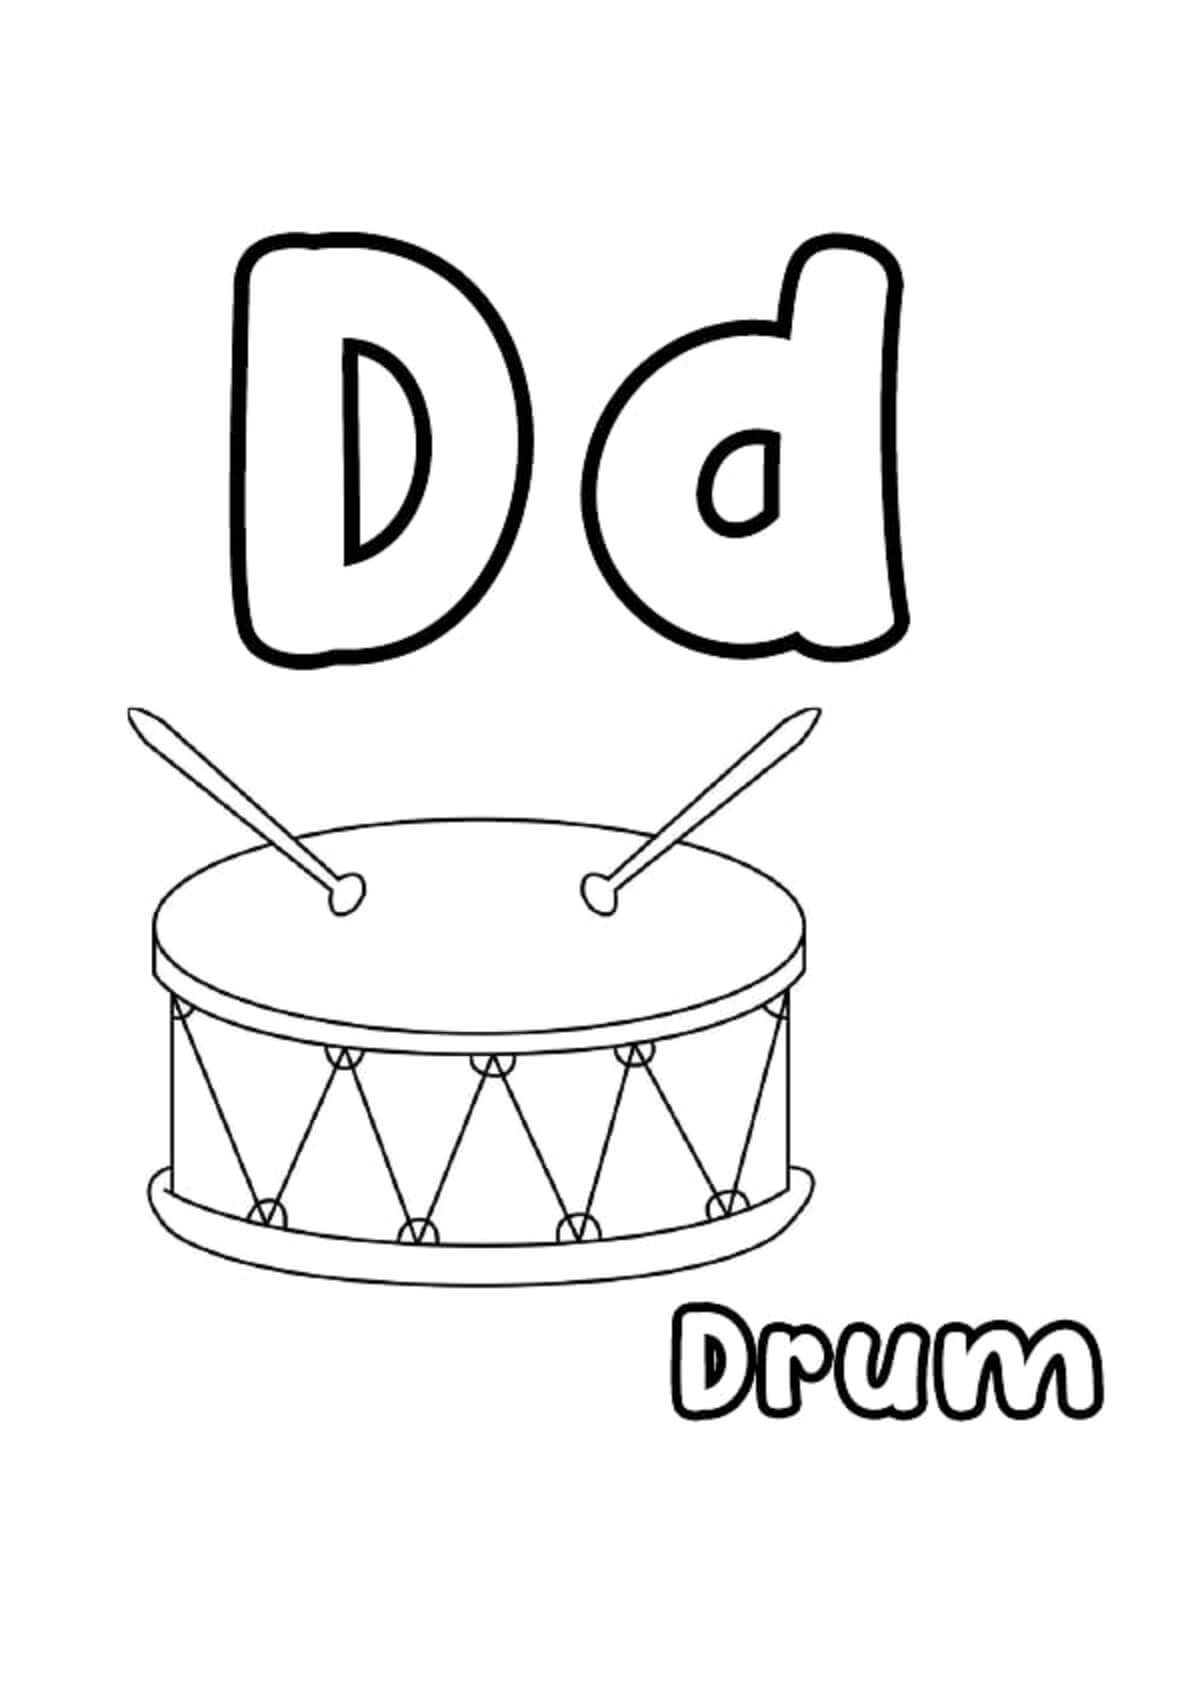 Buchstabe D für Trommel